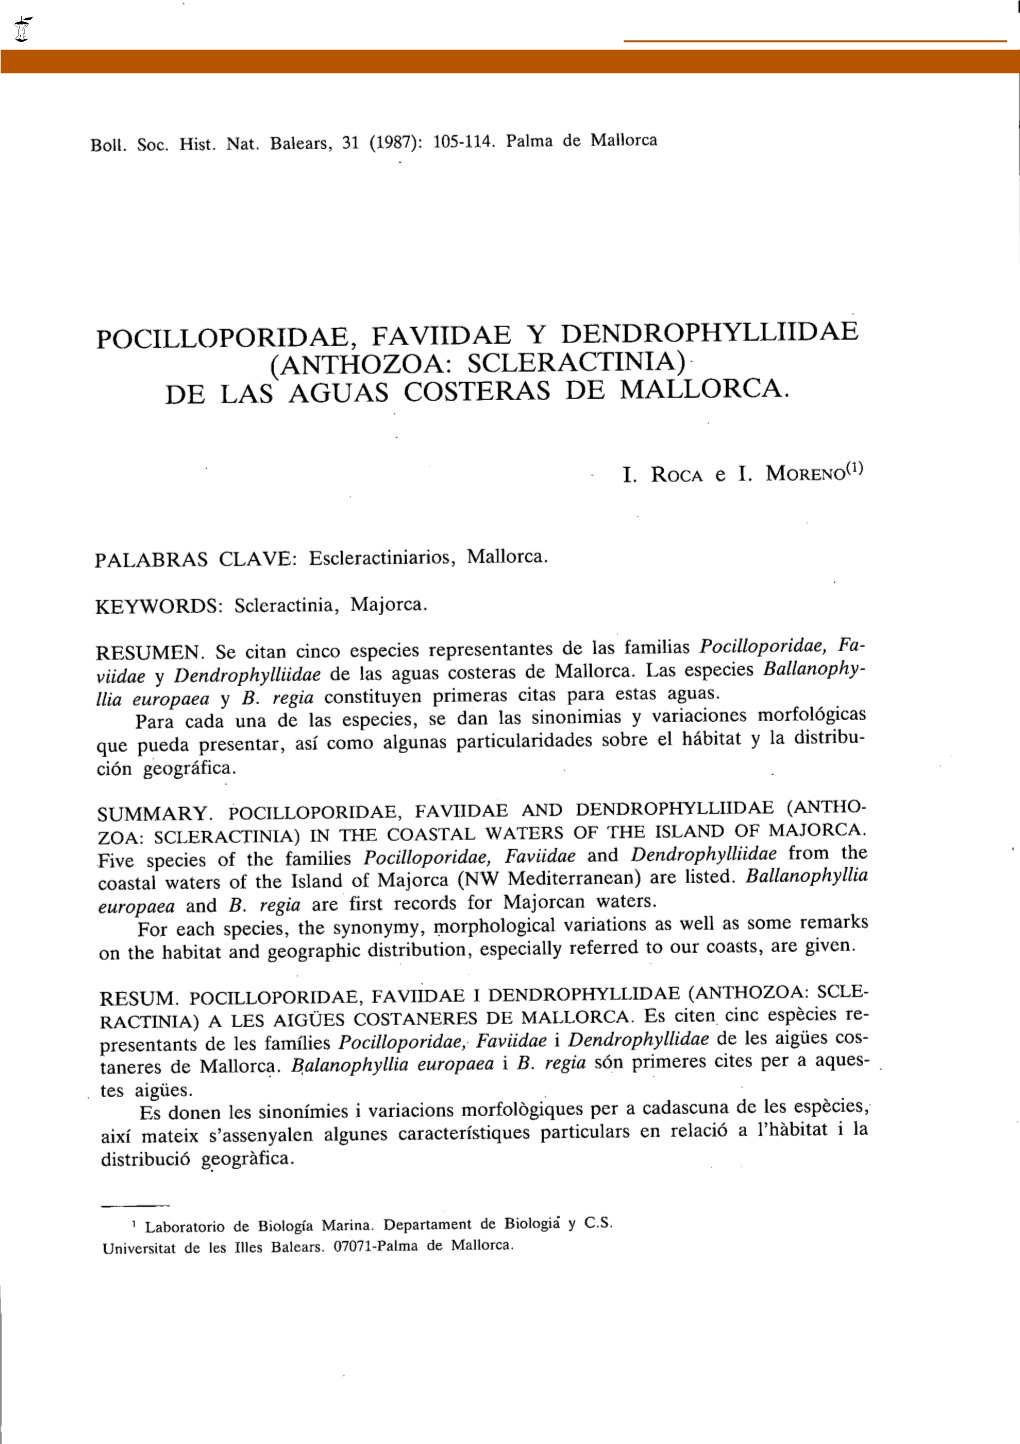 POCILLOPORIDAE, FAVIIDAE Y DENDROPHYLLIIDAE (ANTHOZOA: SCLERACTINIA) DE LAS AGUAS COSTERAS DE MALLORCA